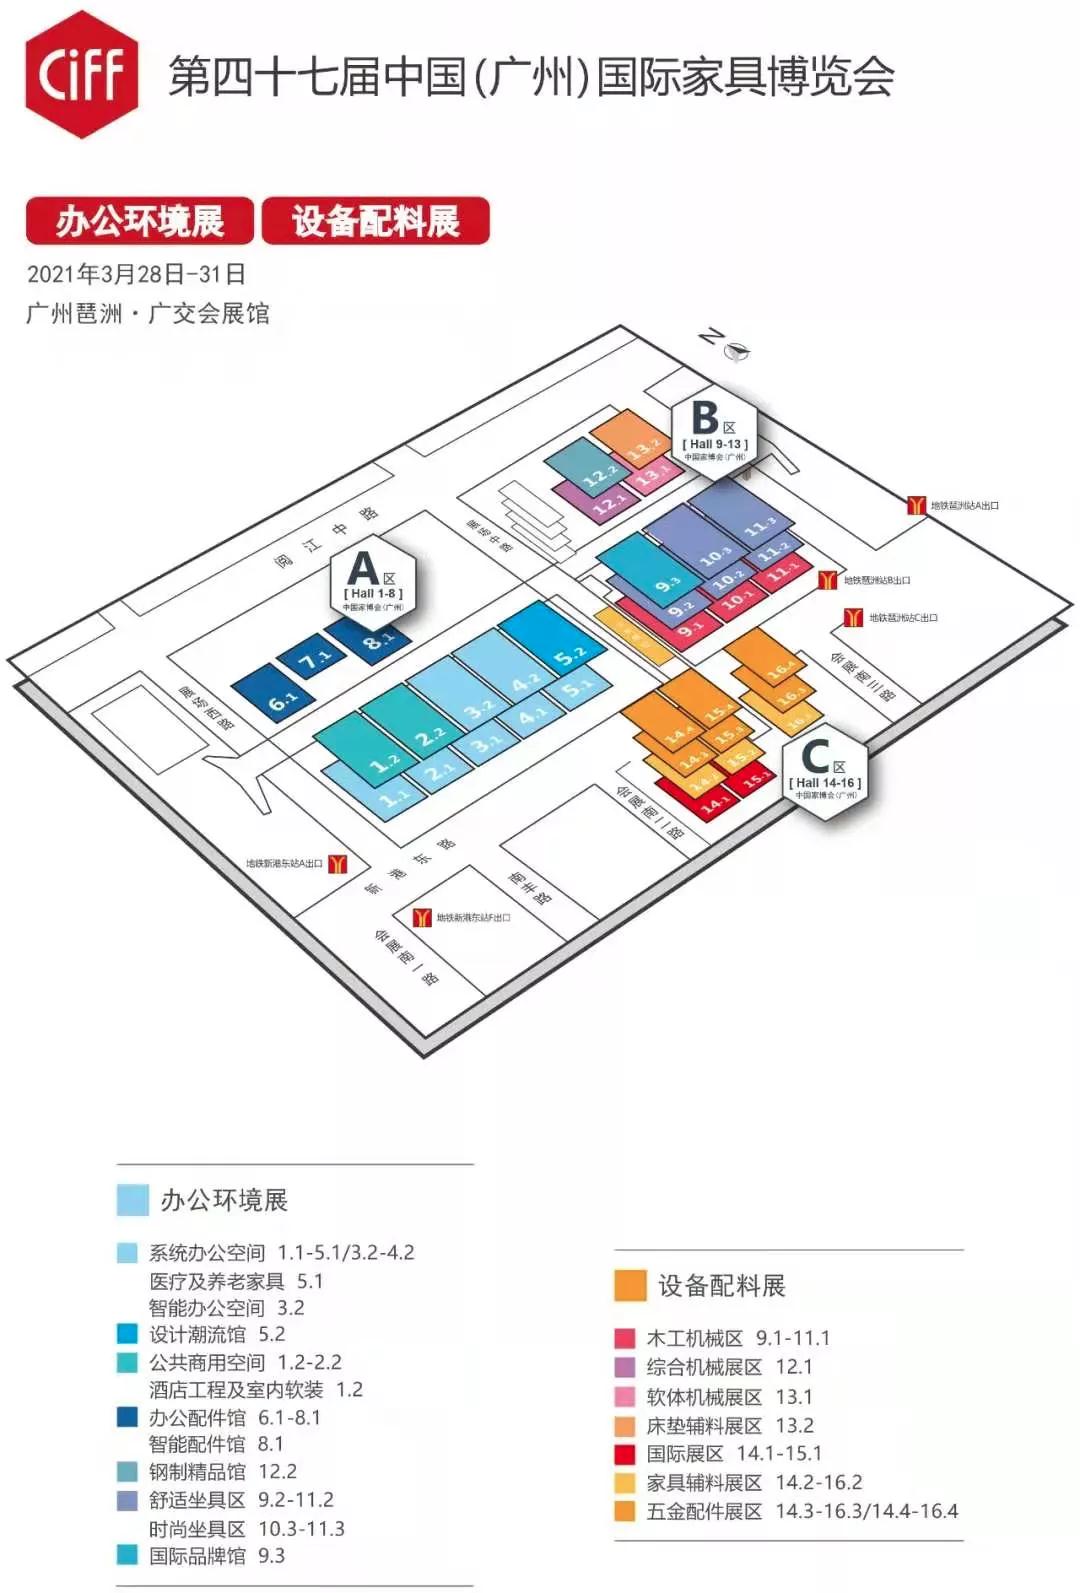 今年9月份上海家具展的摊位费要多少 效果怎么样